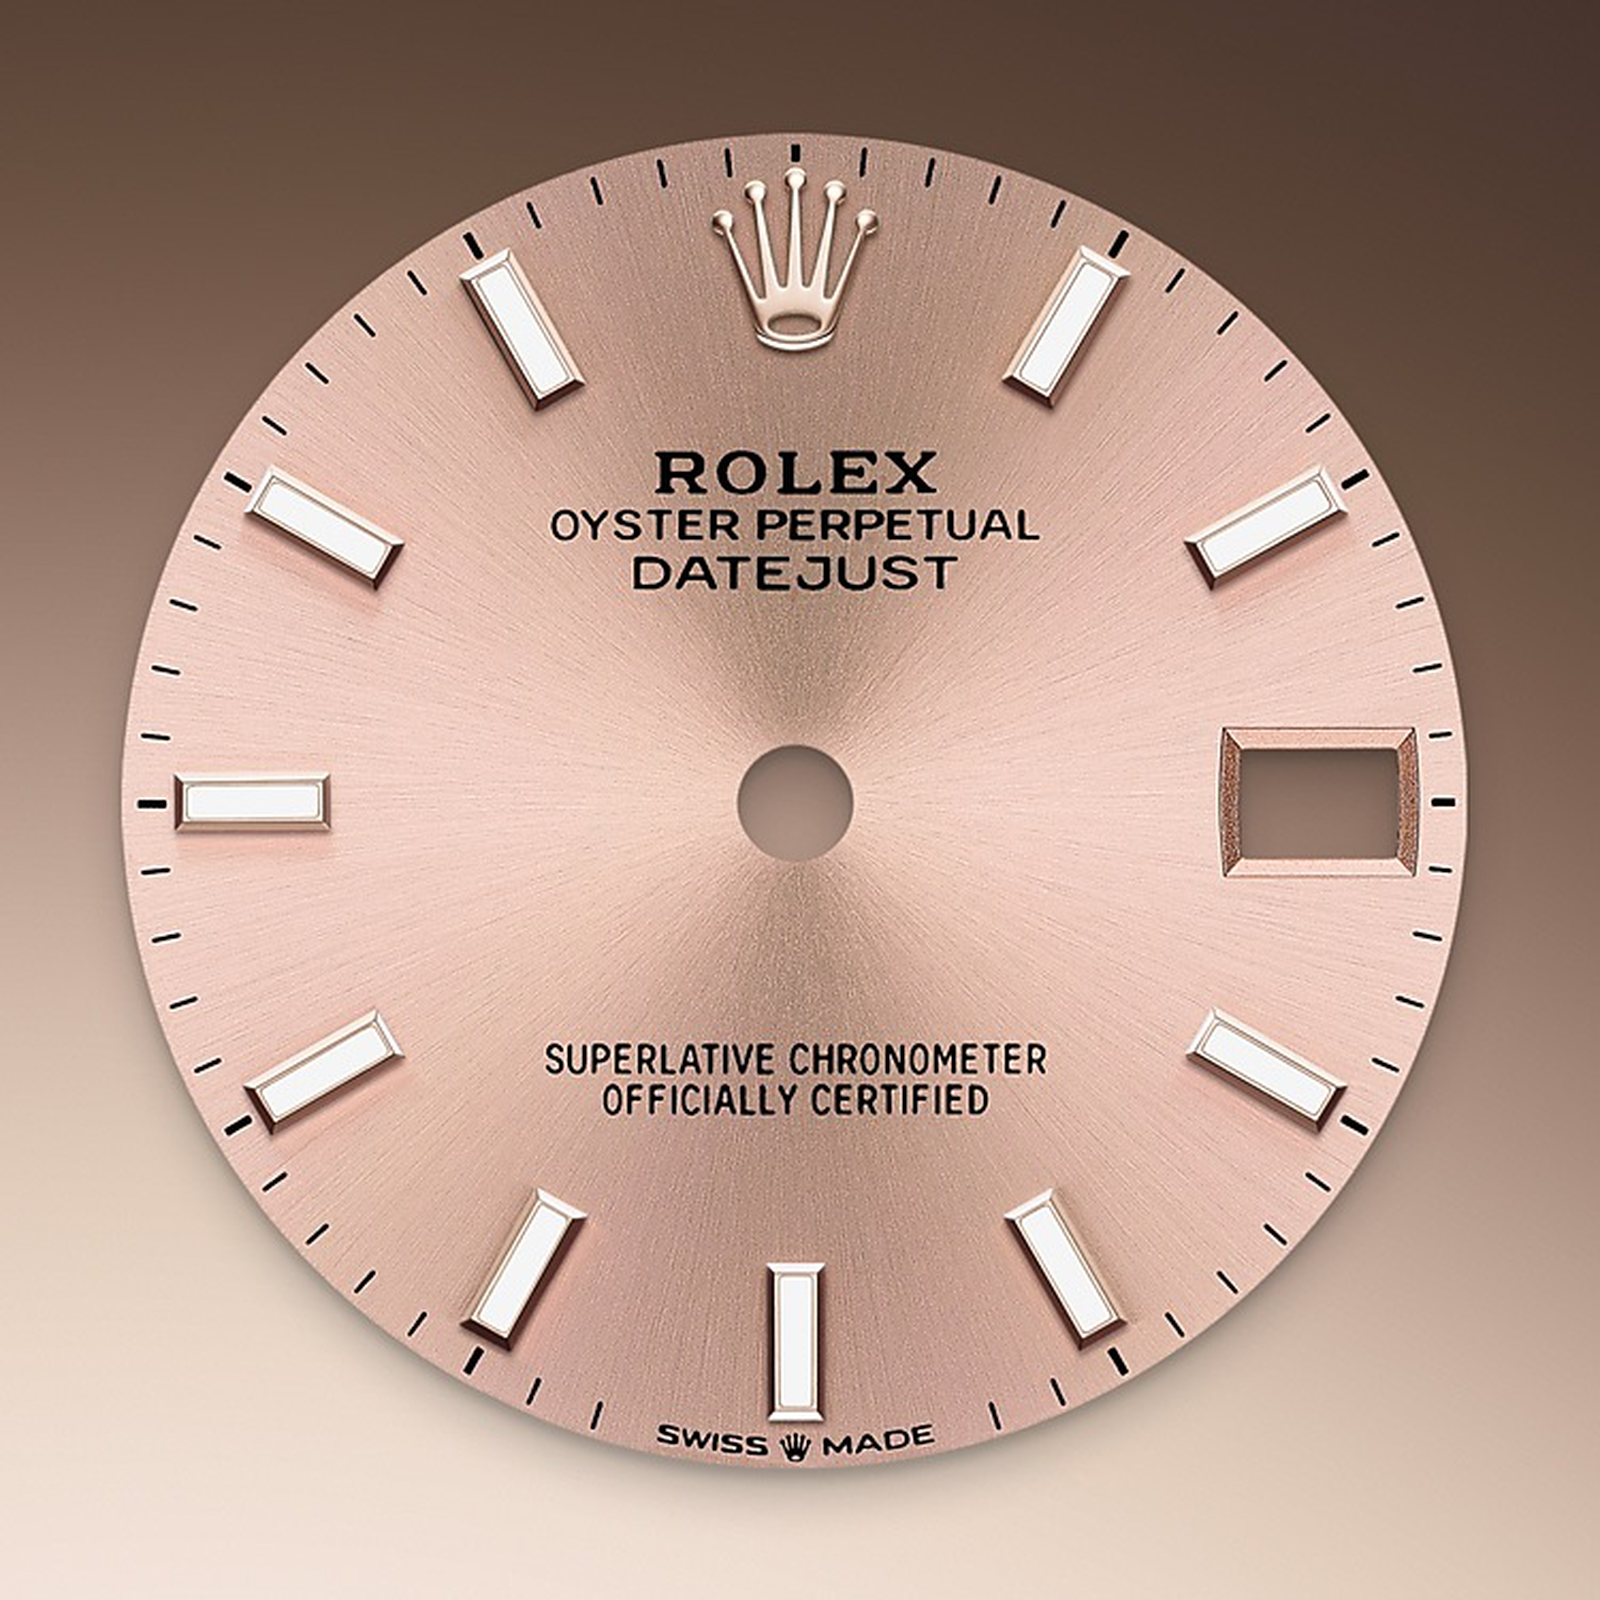 Rosè-colour dial